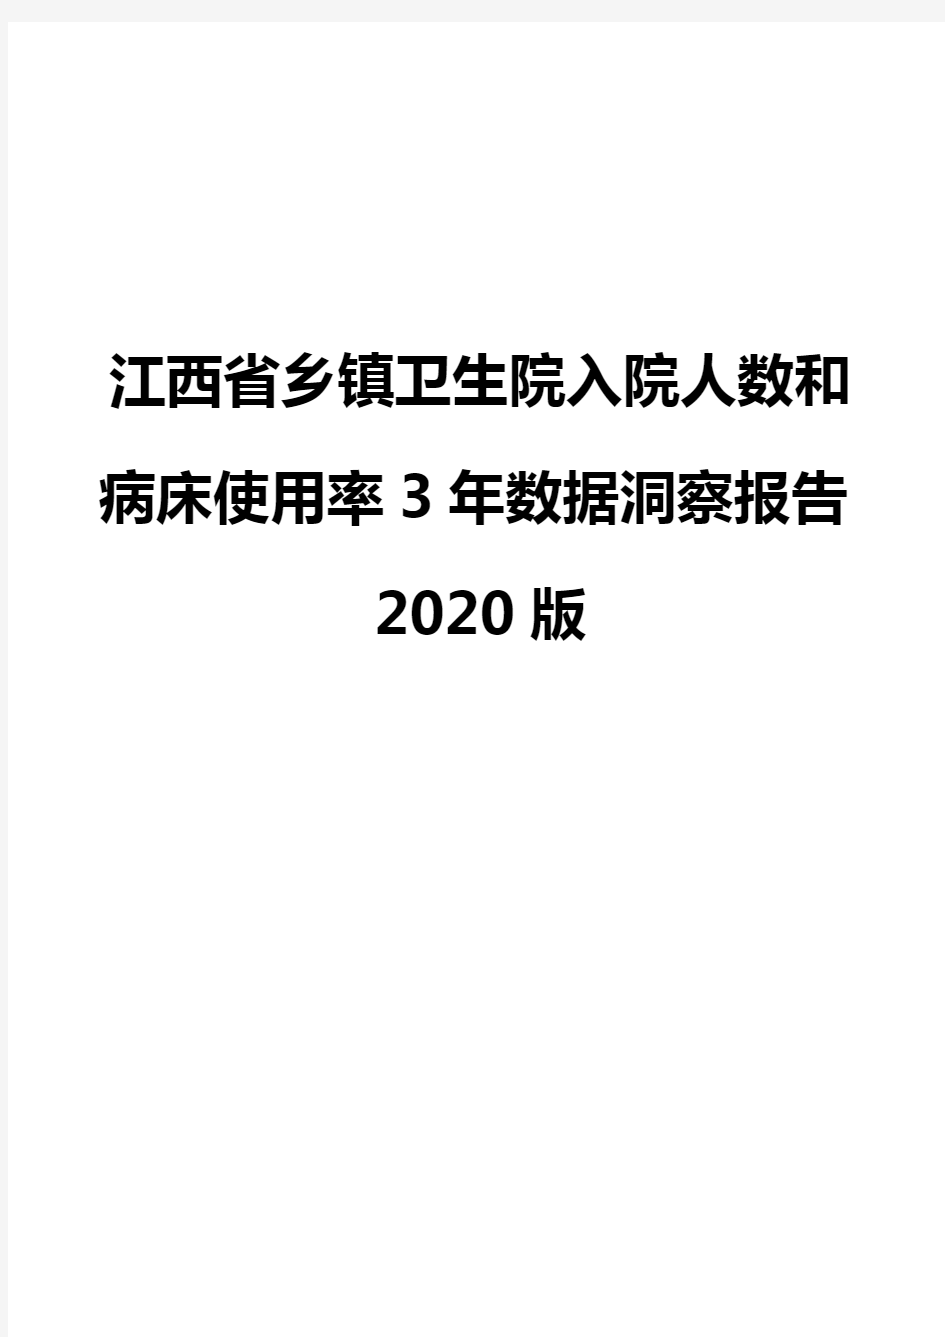 江西省乡镇卫生院入院人数和病床使用率3年数据洞察报告2020版